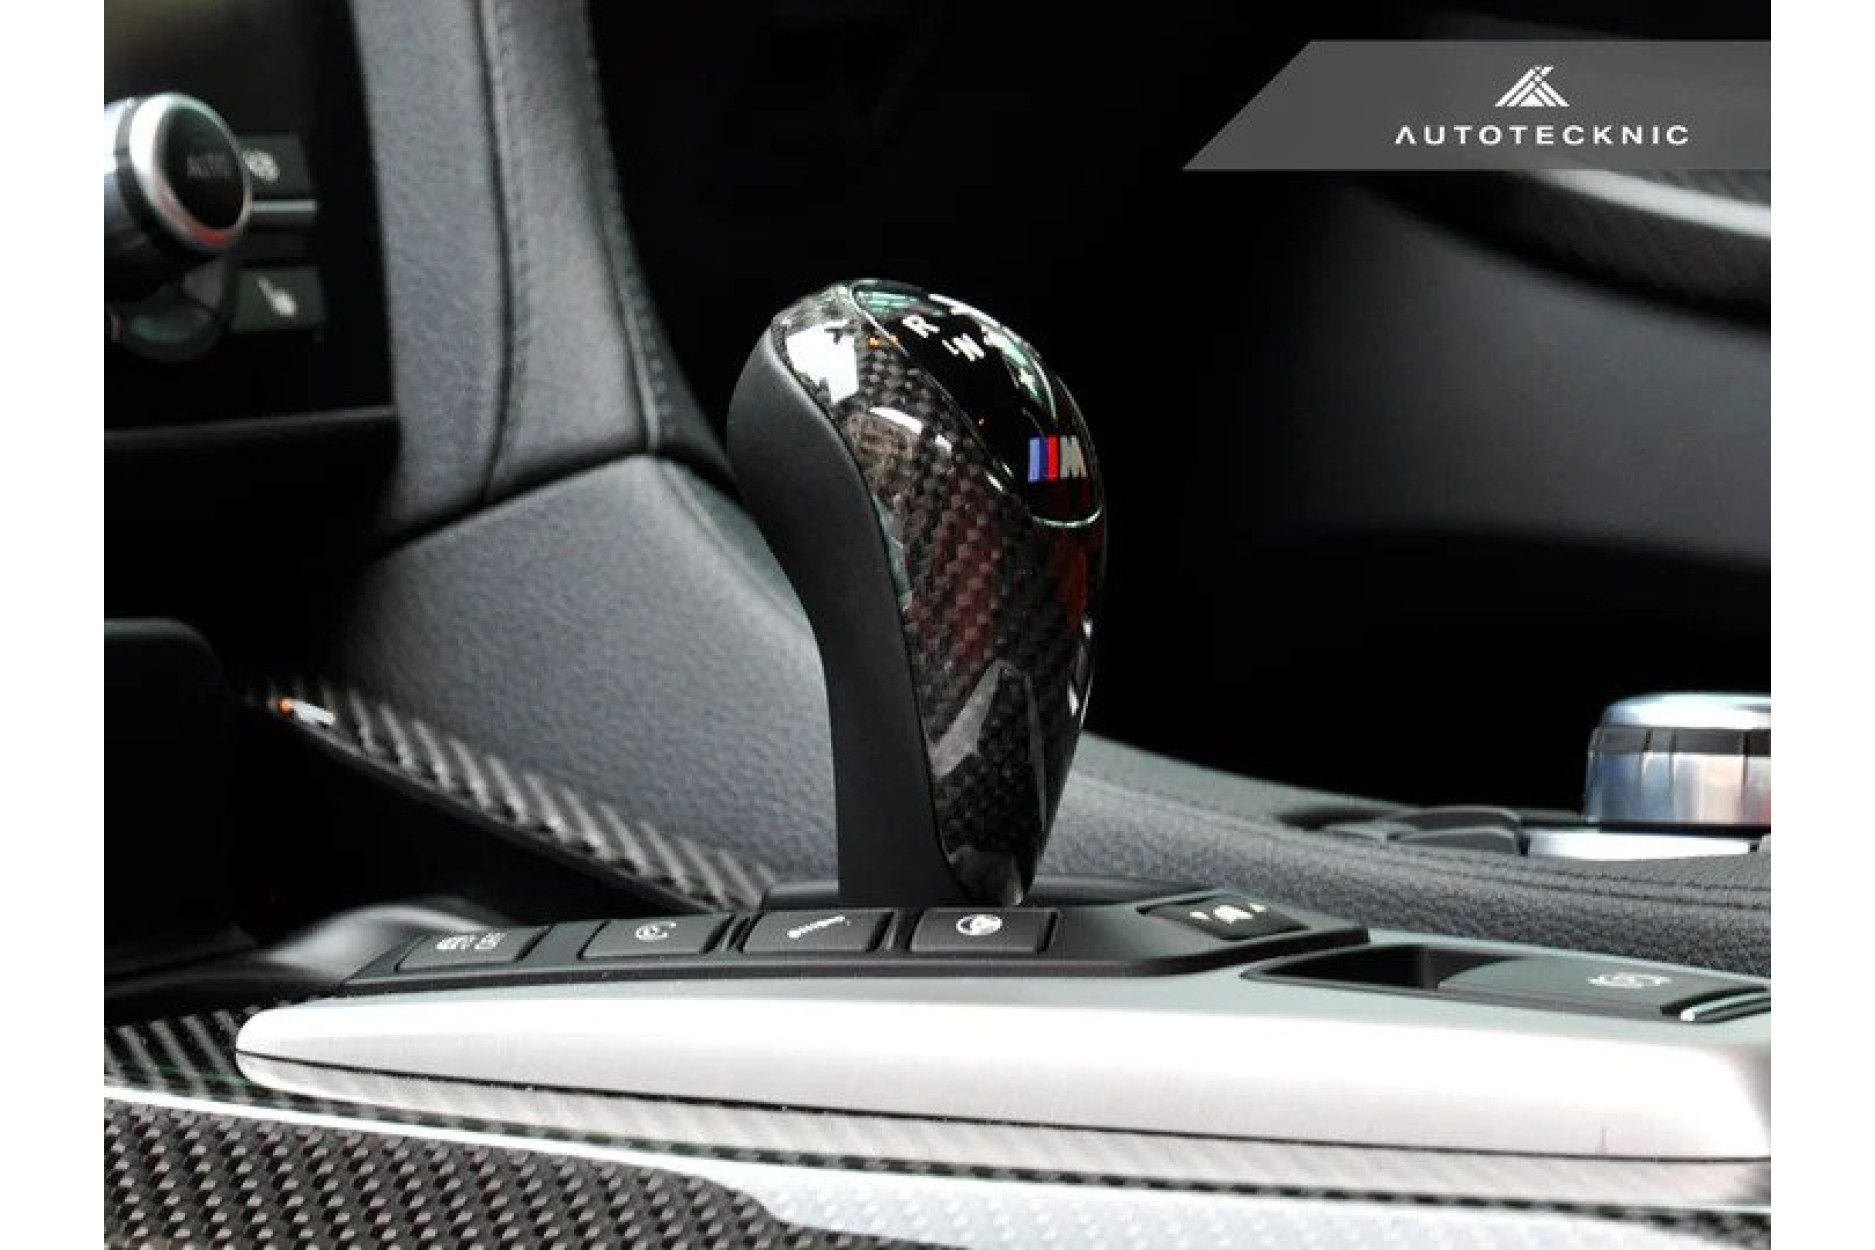 Autotecknic Carbon Schaltknauf Abdeckung für BMW F87 M2 und M2 Competition  - online kaufen bei CFD